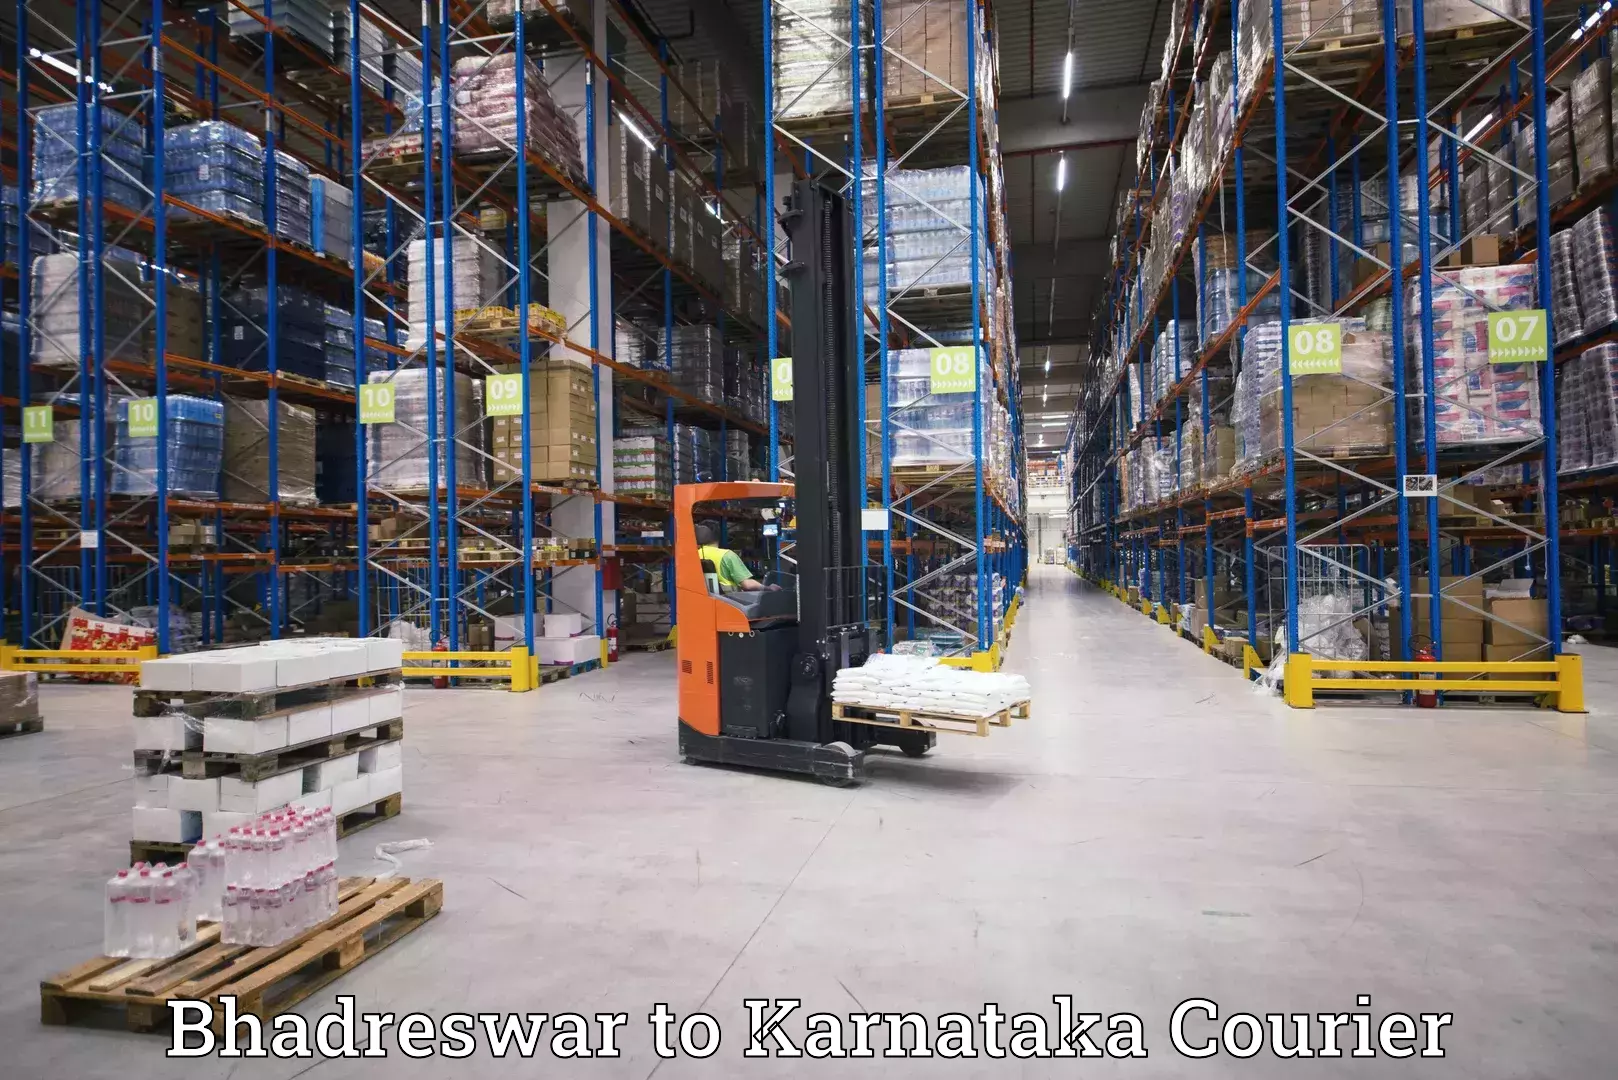 Next-generation courier services Bhadreswar to Saundatti Yallamma